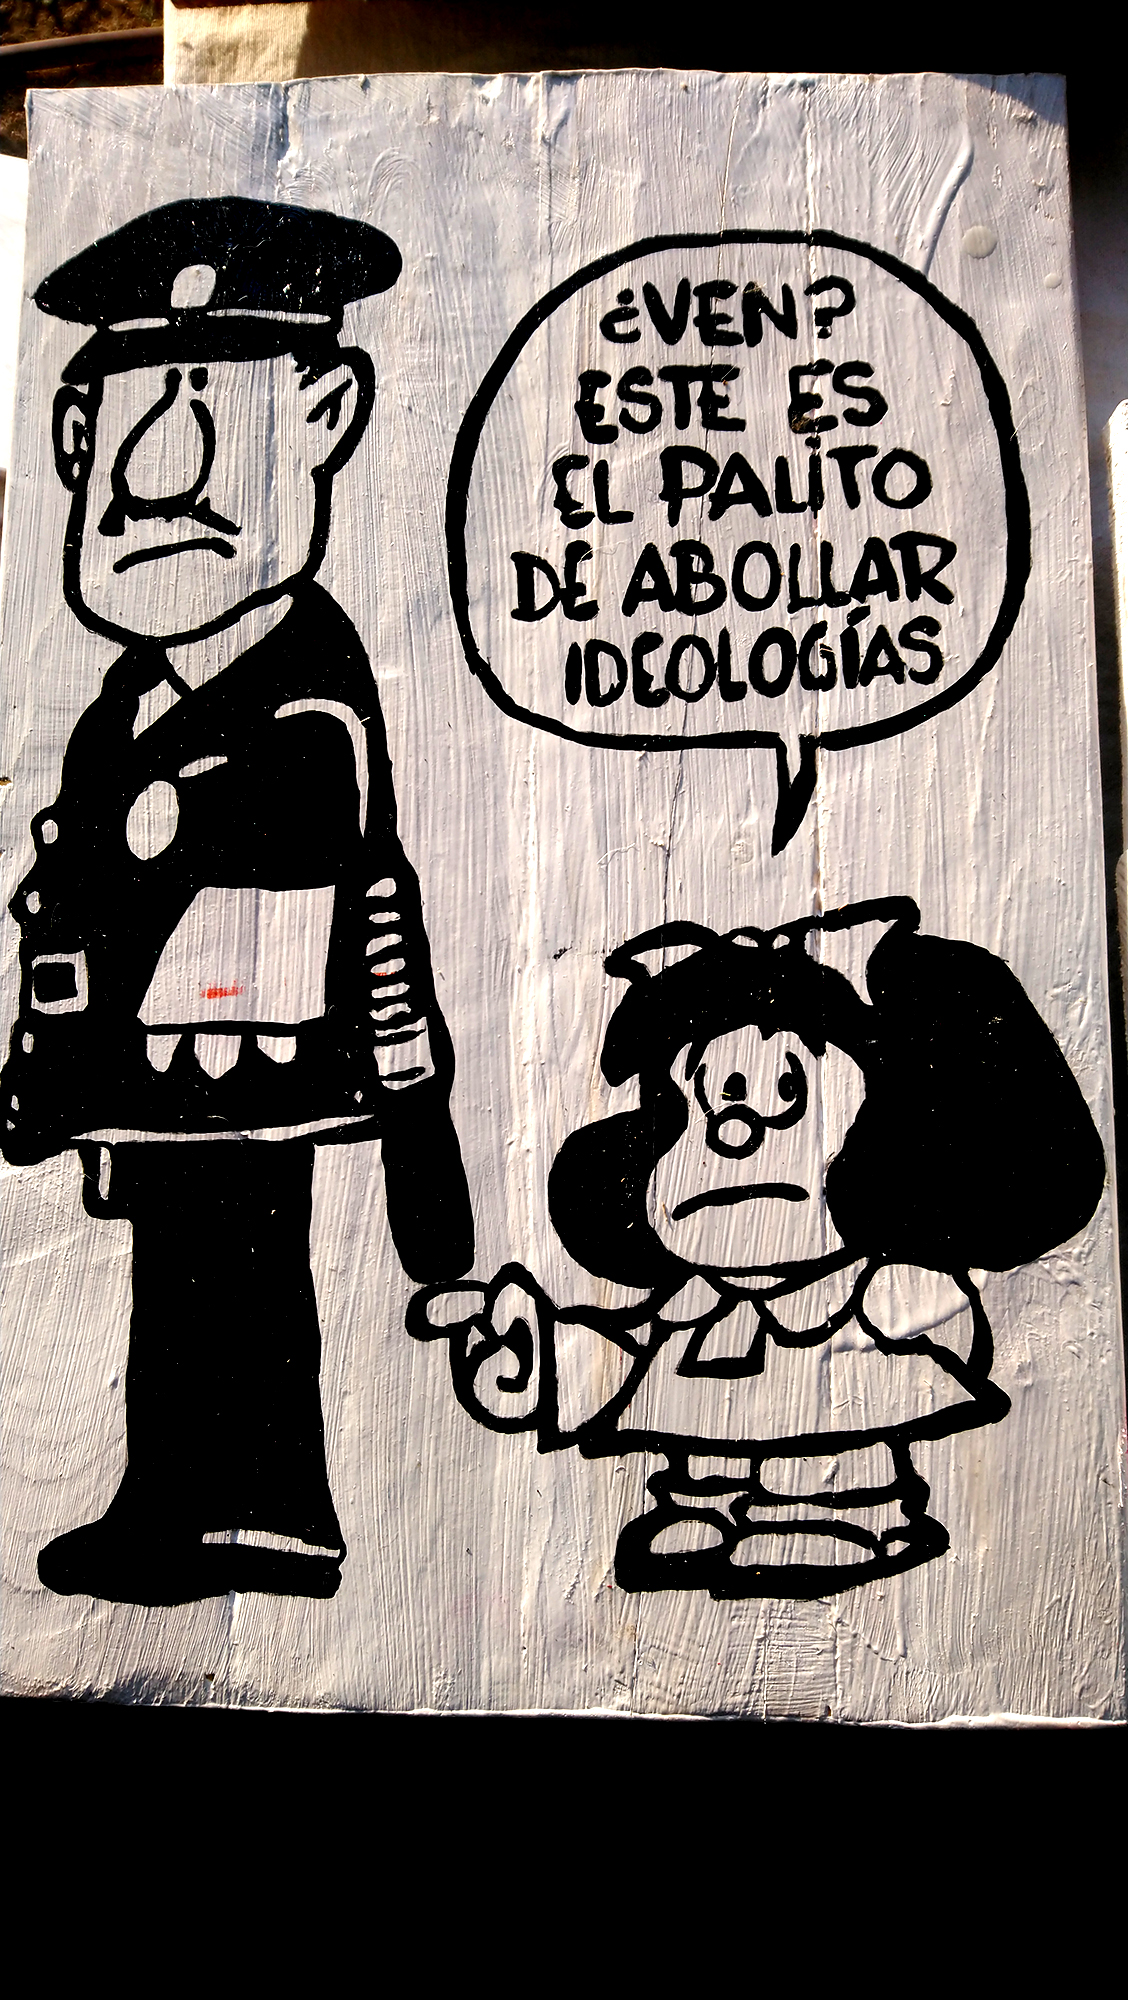 Cuadro Mafalda Este es el palito de abollar ideologias